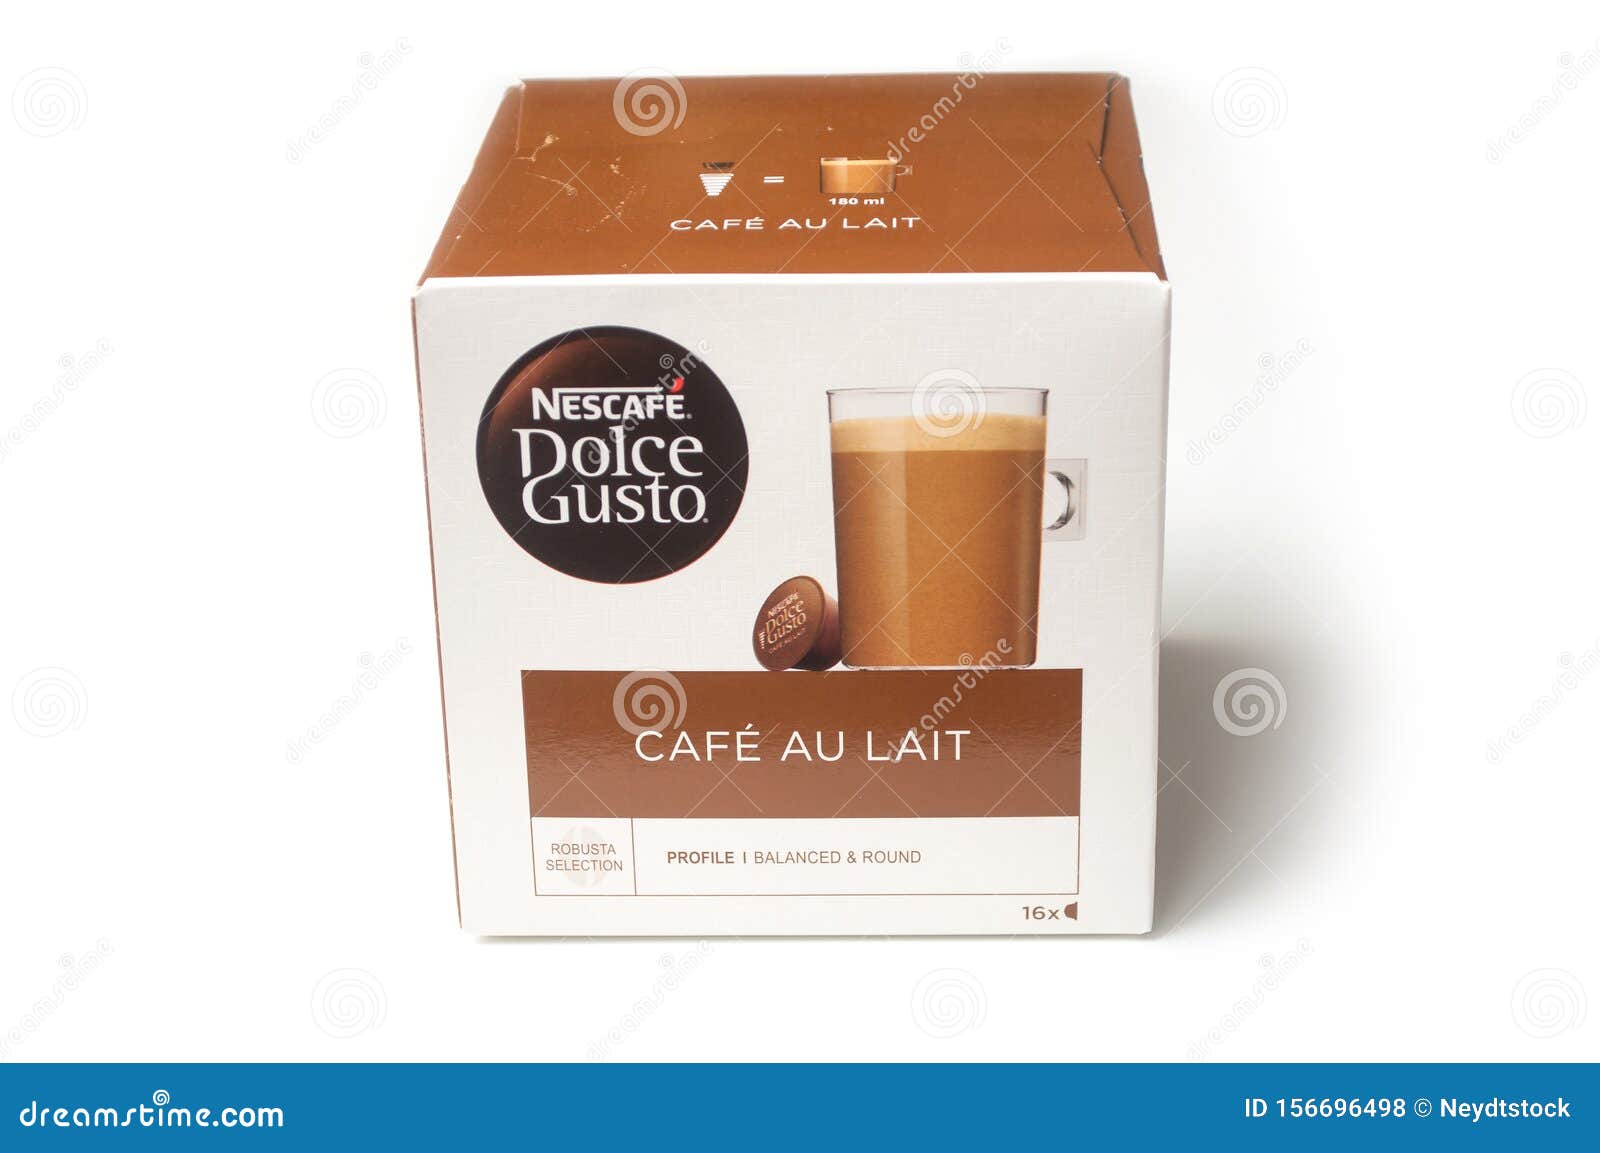 NESCAFÉ® Dolce Gusto® Capsules, Cafe Au Lait, 16/Box